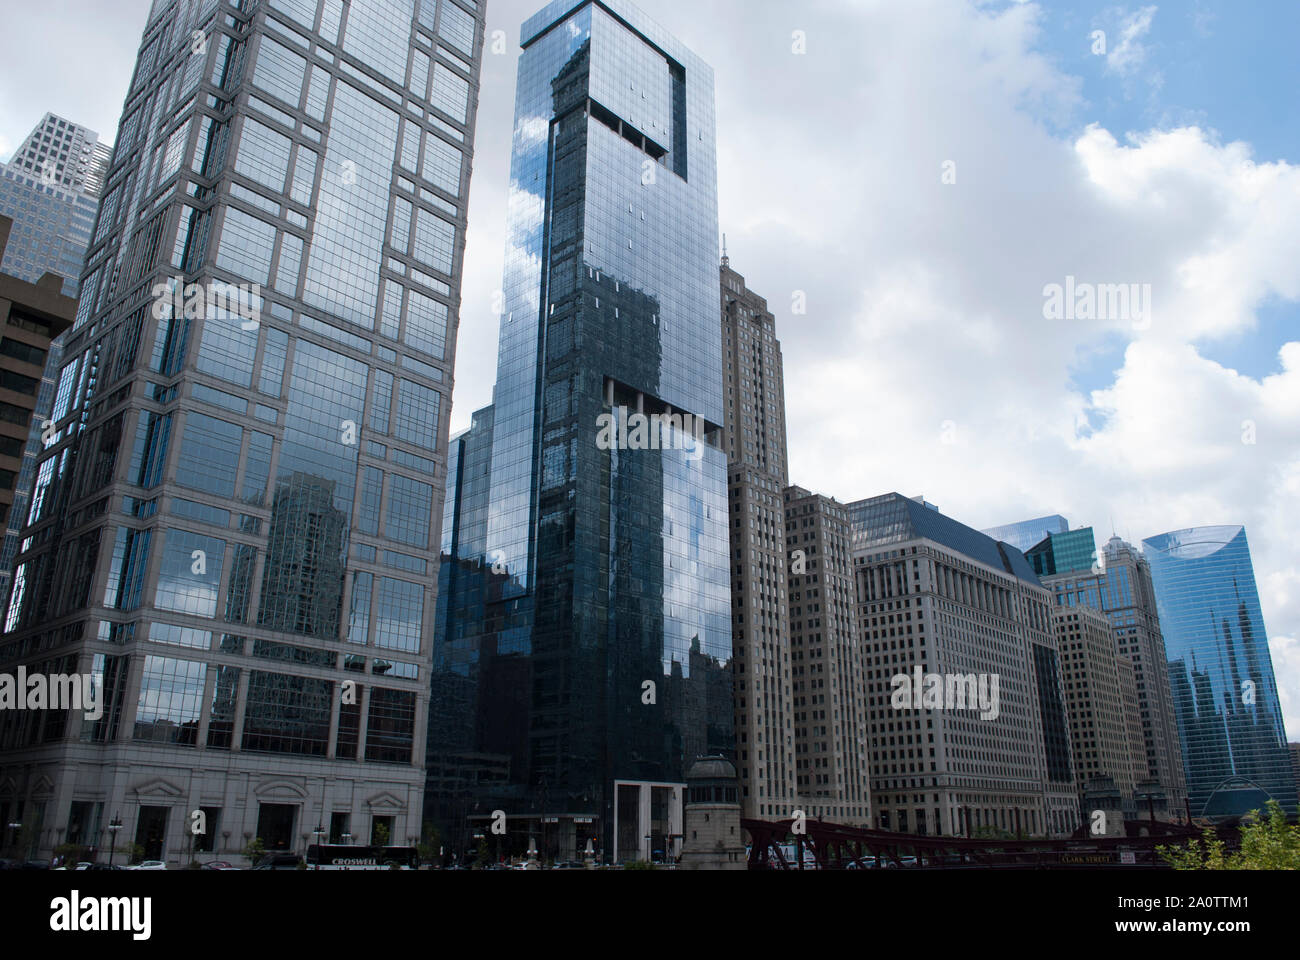 L'architecture moderne de verre et d'acier avec motif de réflexion sur le mur de nuages. Des tons de bleu. Les cellules, des motifs géométriques. Bâtiment de style urbain Banque D'Images